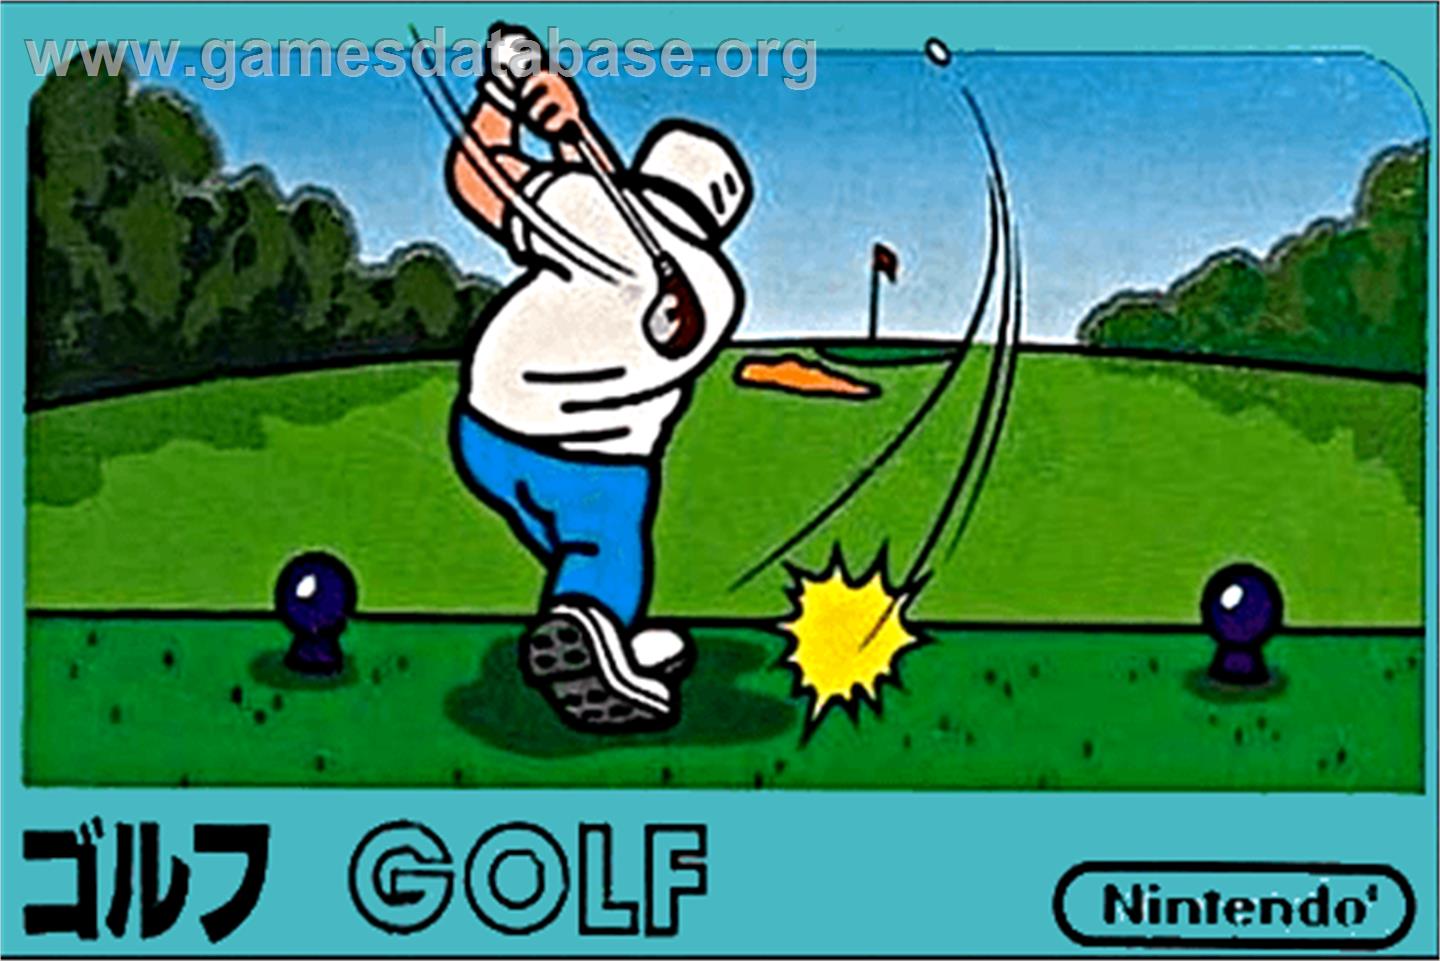 Golf - Nintendo NES - Artwork - Box